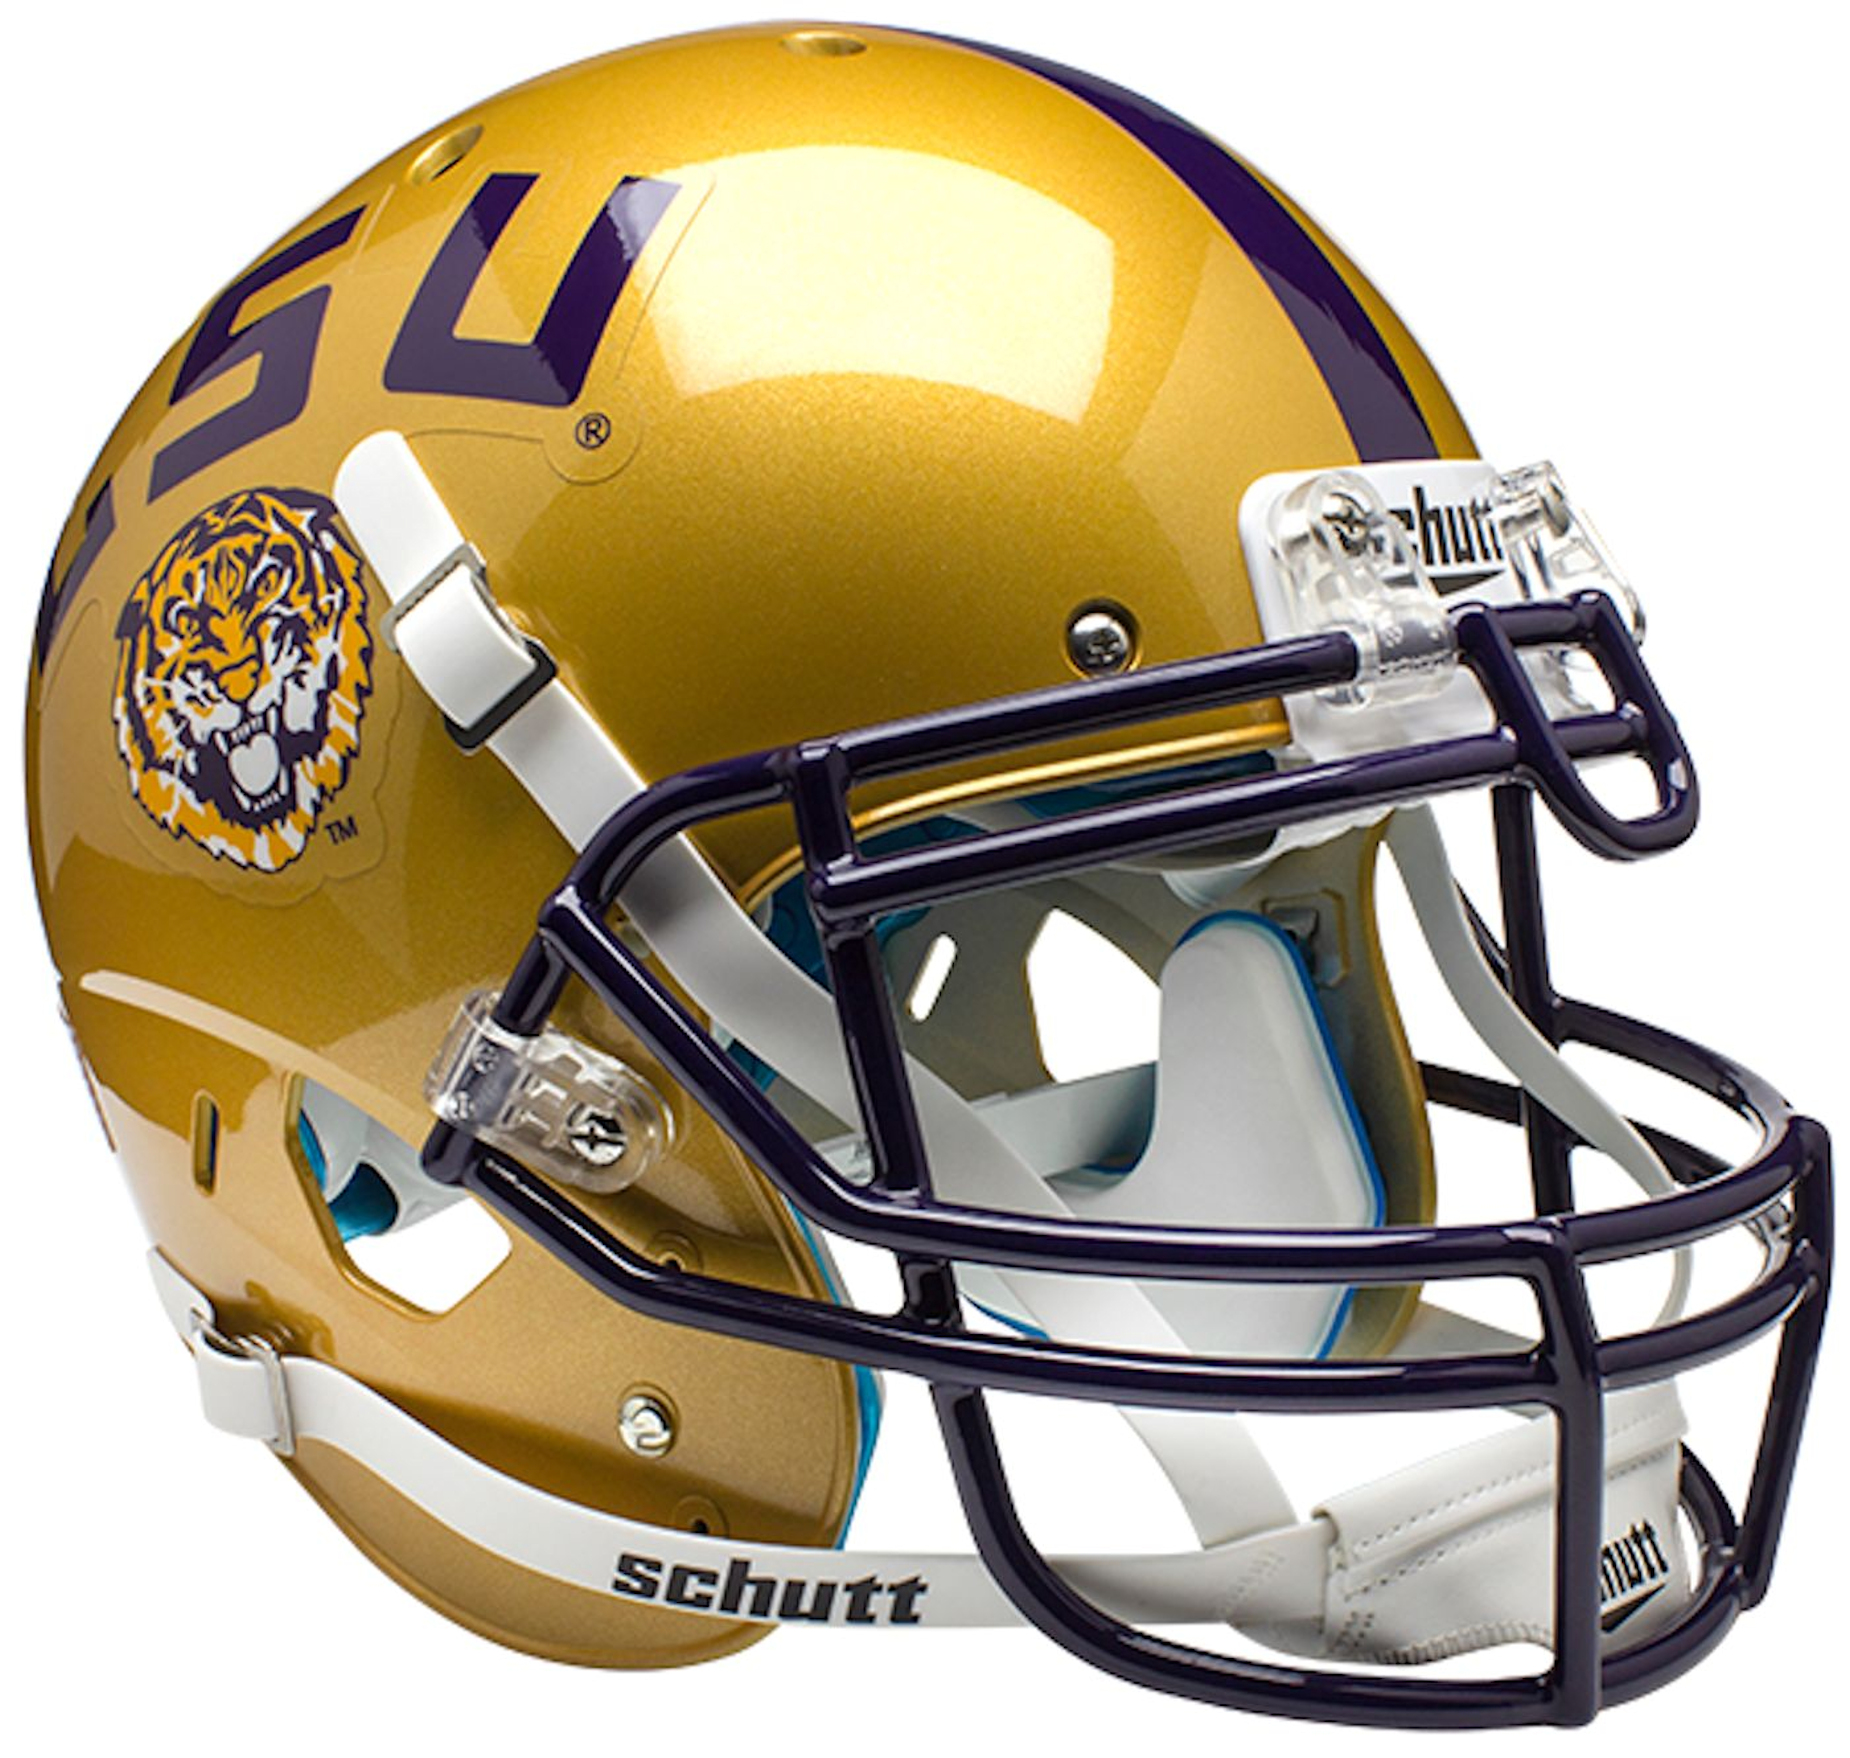 LSU Tigers Authentic College XP Football Helmet Schutt <B>Gold</B>